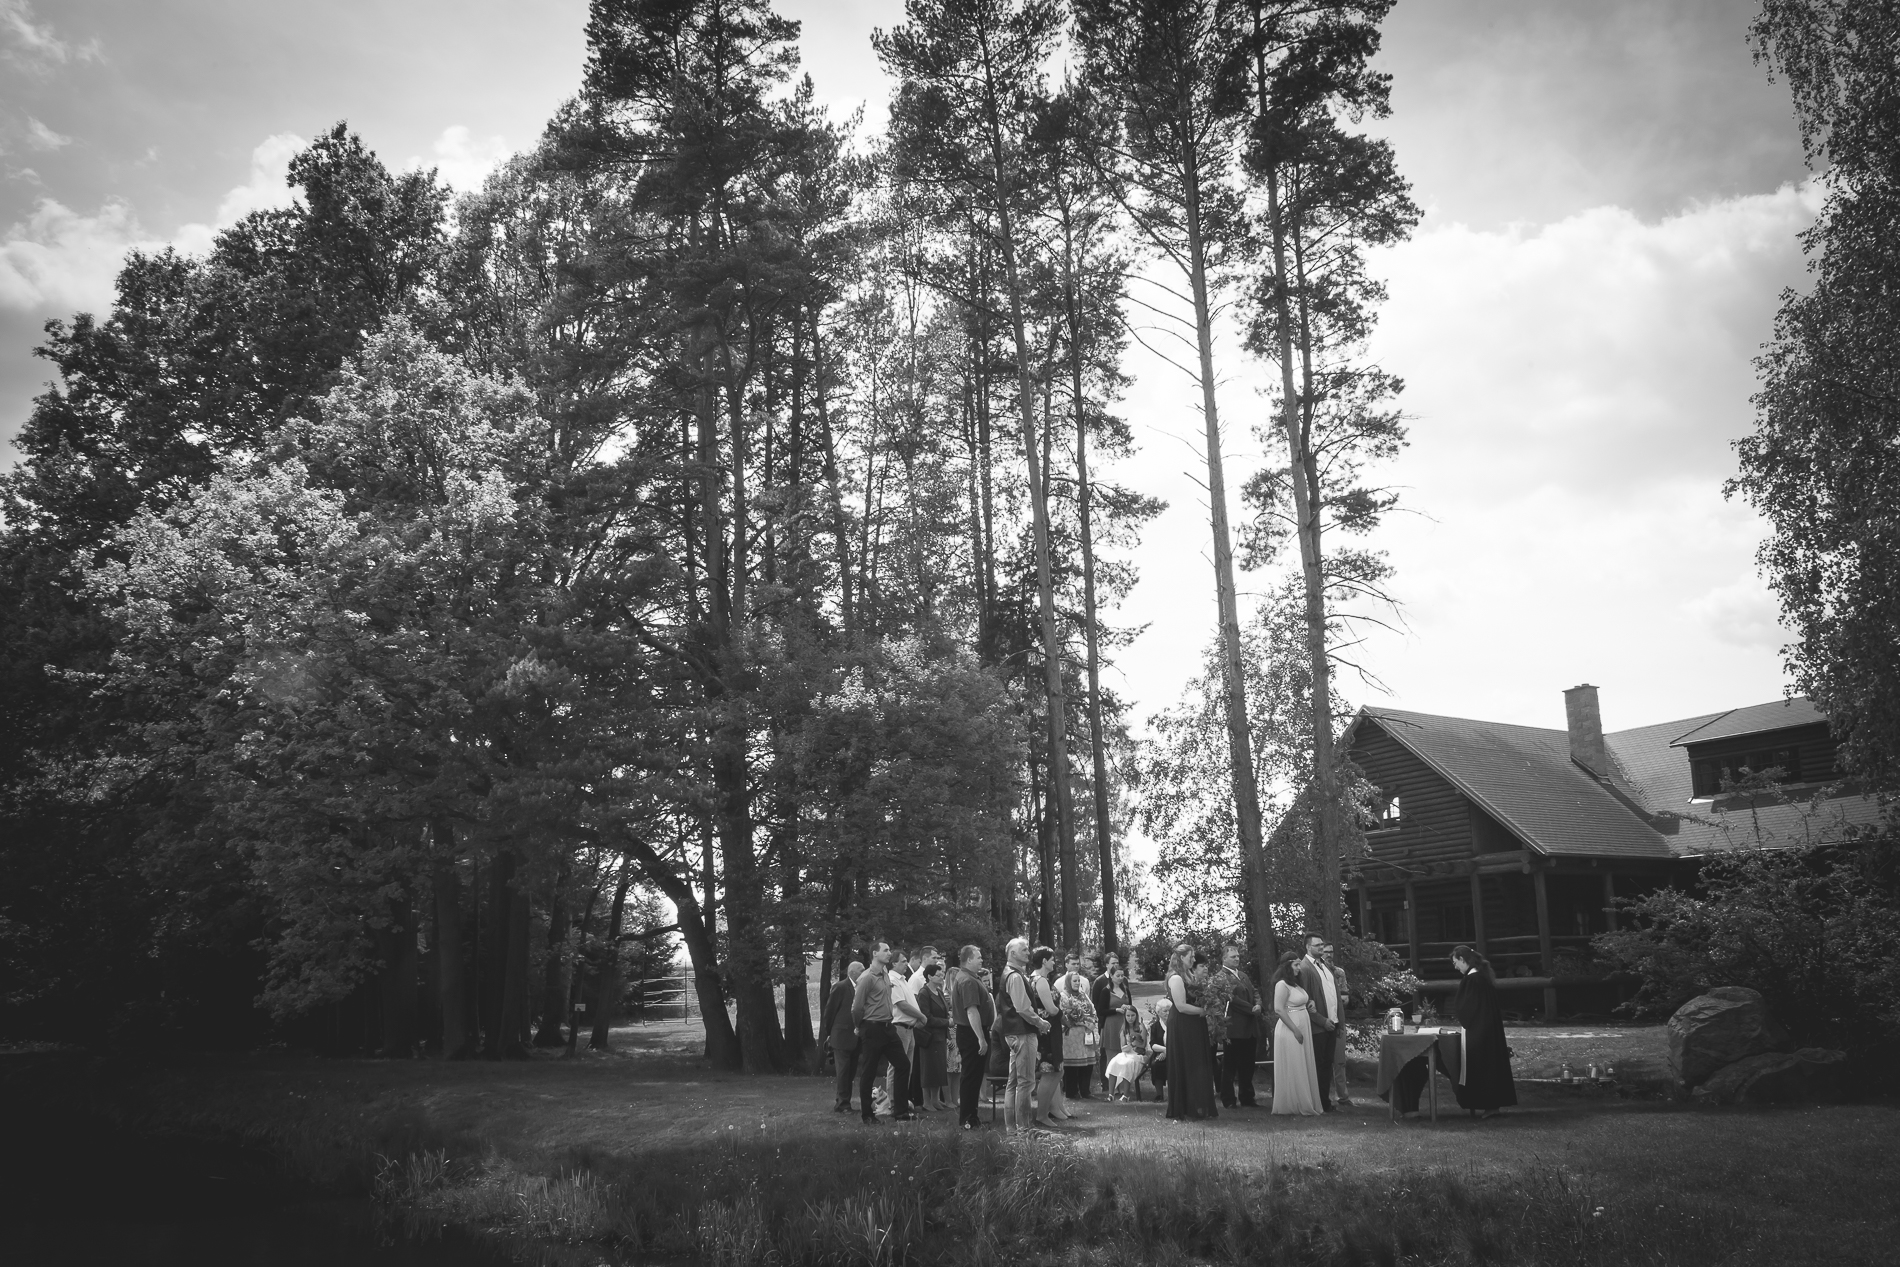 svatební fotografie Soňa & Lukáš, svatba v lese, boho, přírodní svatba - svatební fotograf Studio Beautyfoto